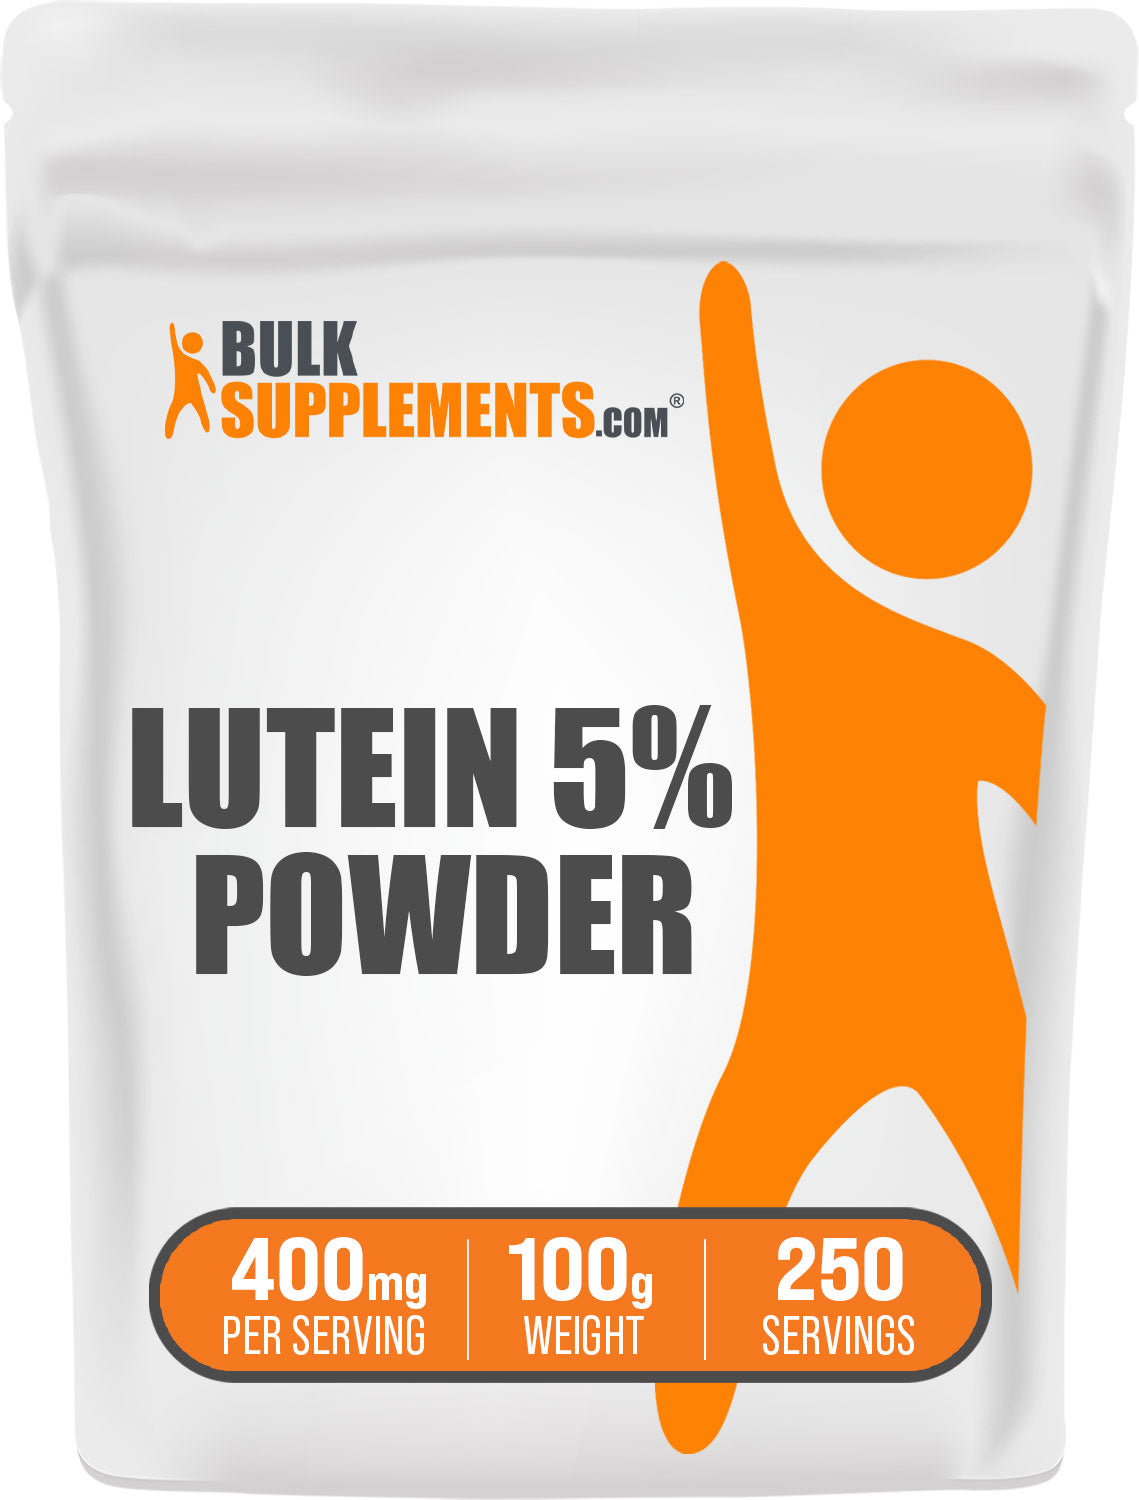 BulkSupplements.com Lutein Powder 100g bag